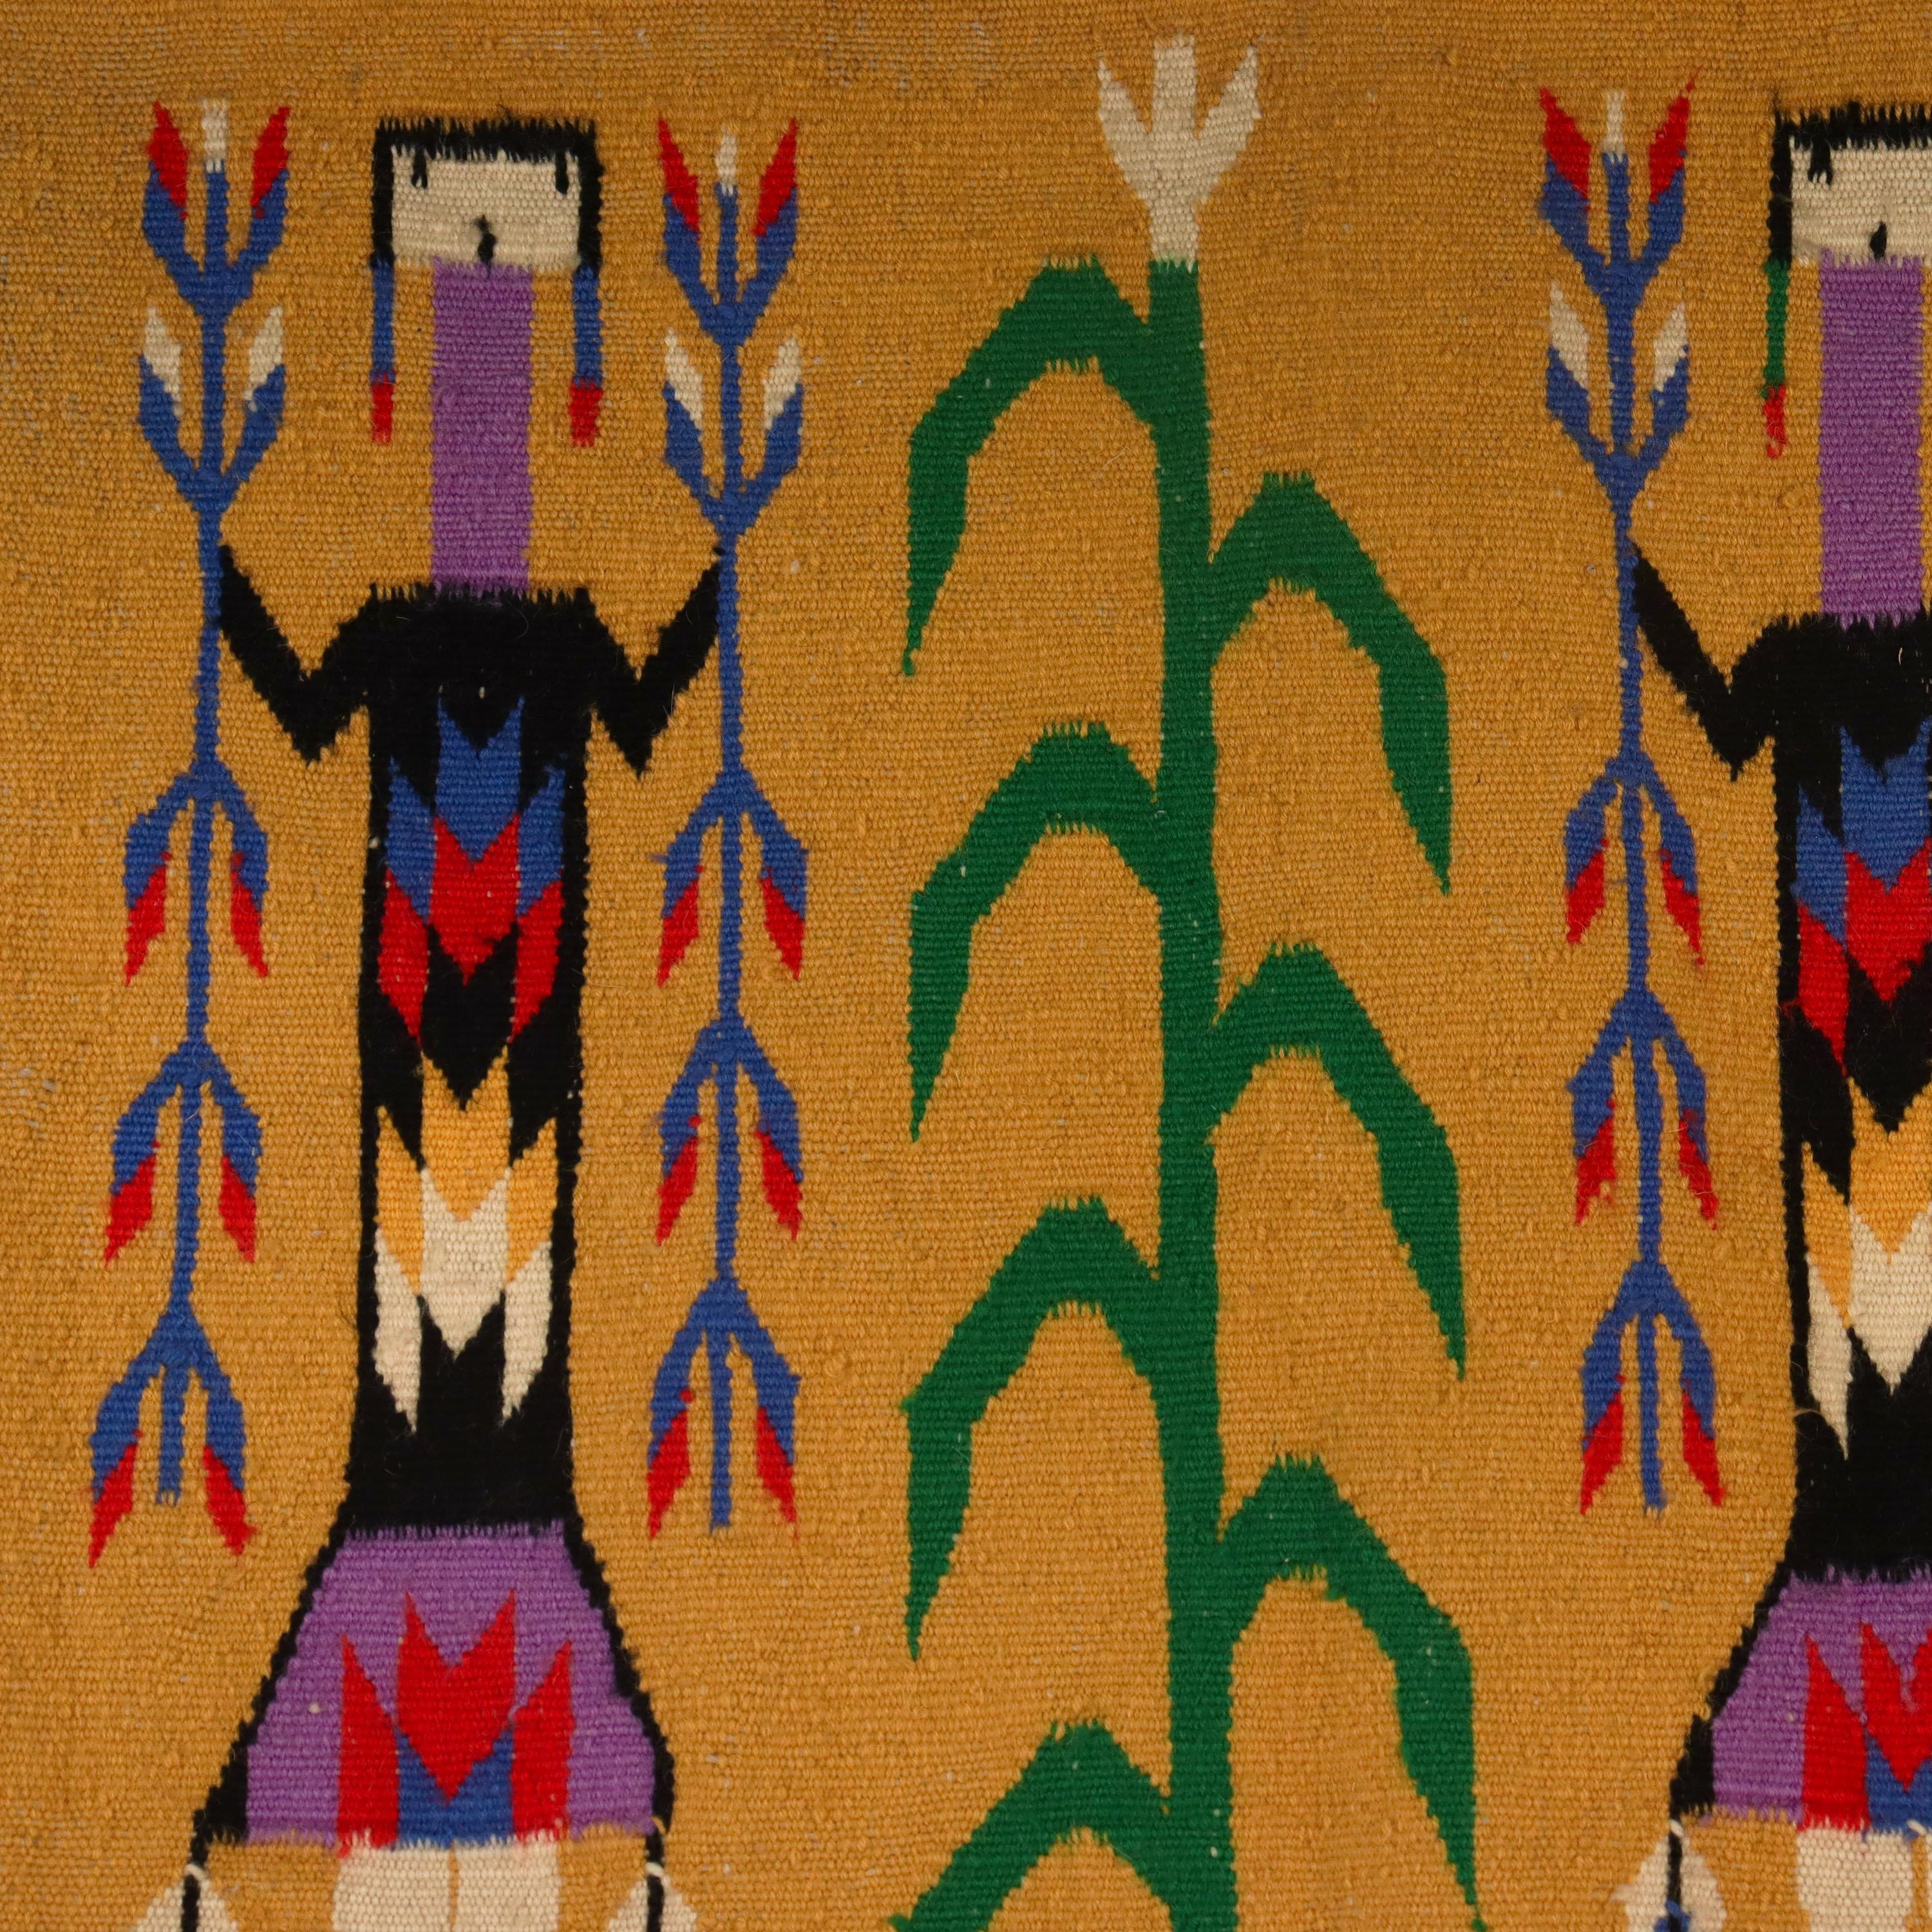 North American Vintage Yei Pictoral Navajo Wool Tapestry or Carpet Weaving with Corn People